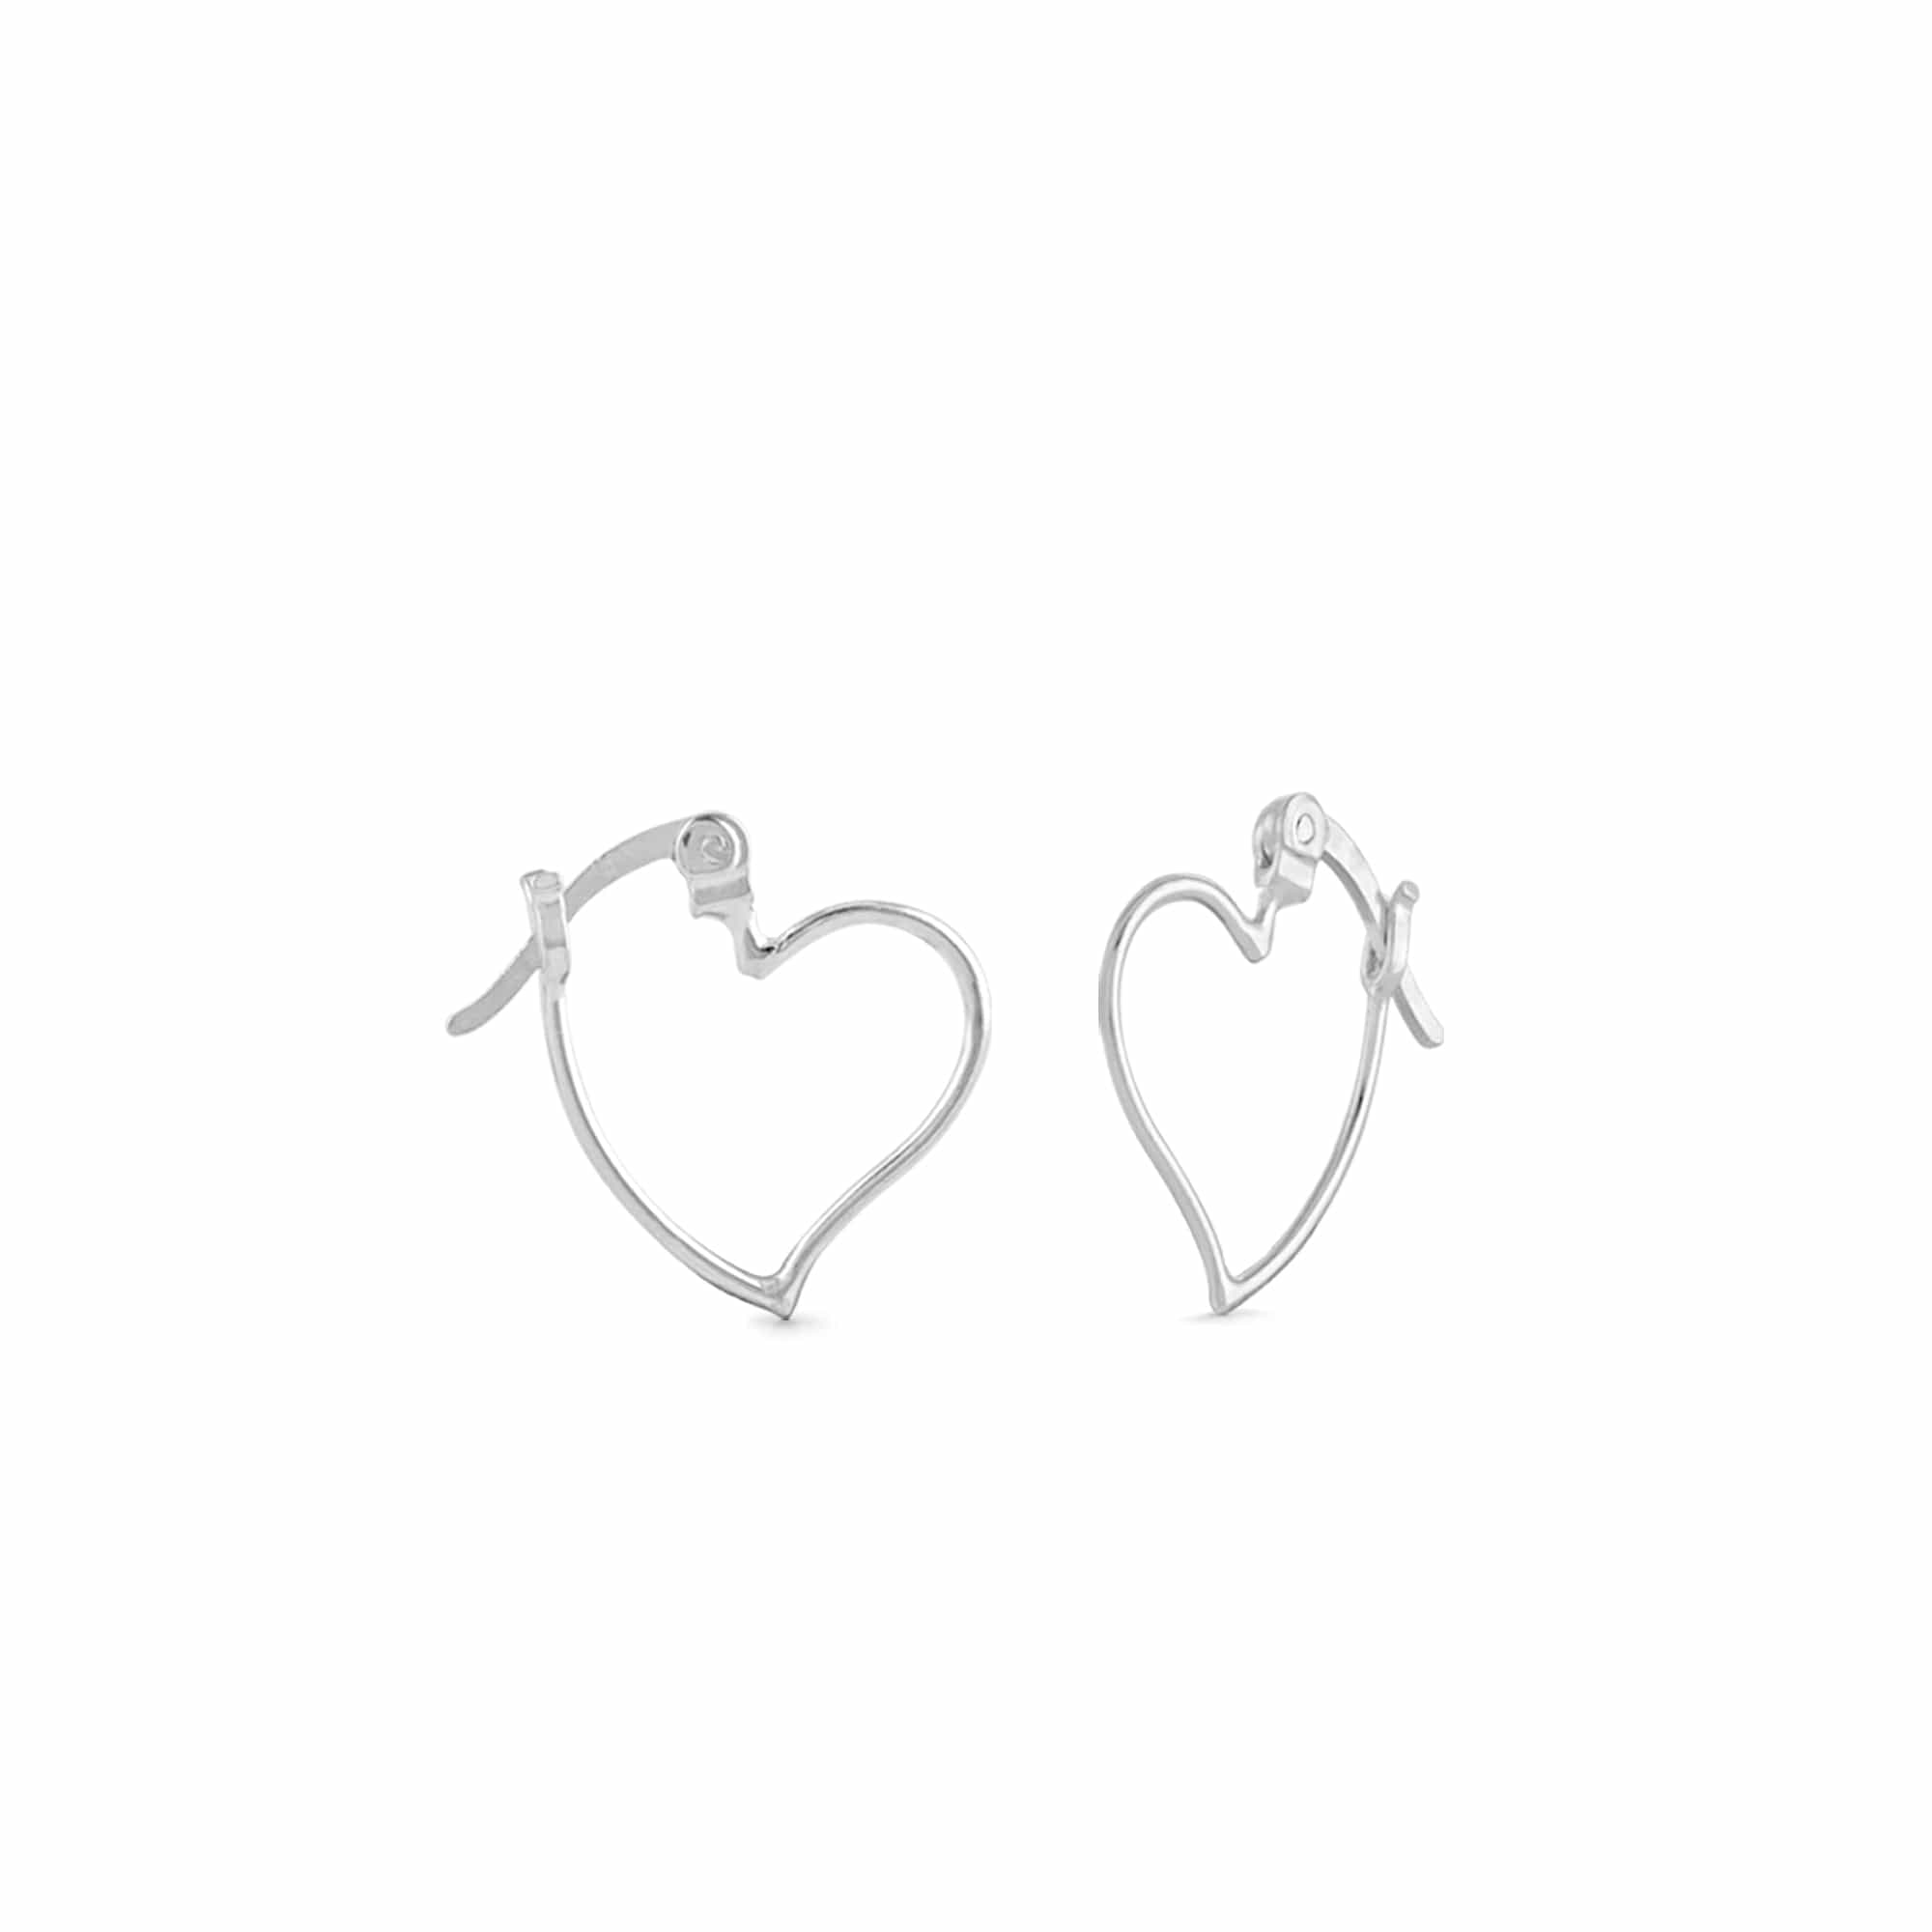 Boma Jewelry Earrings Sterling Silver Heart Tilt Hoops